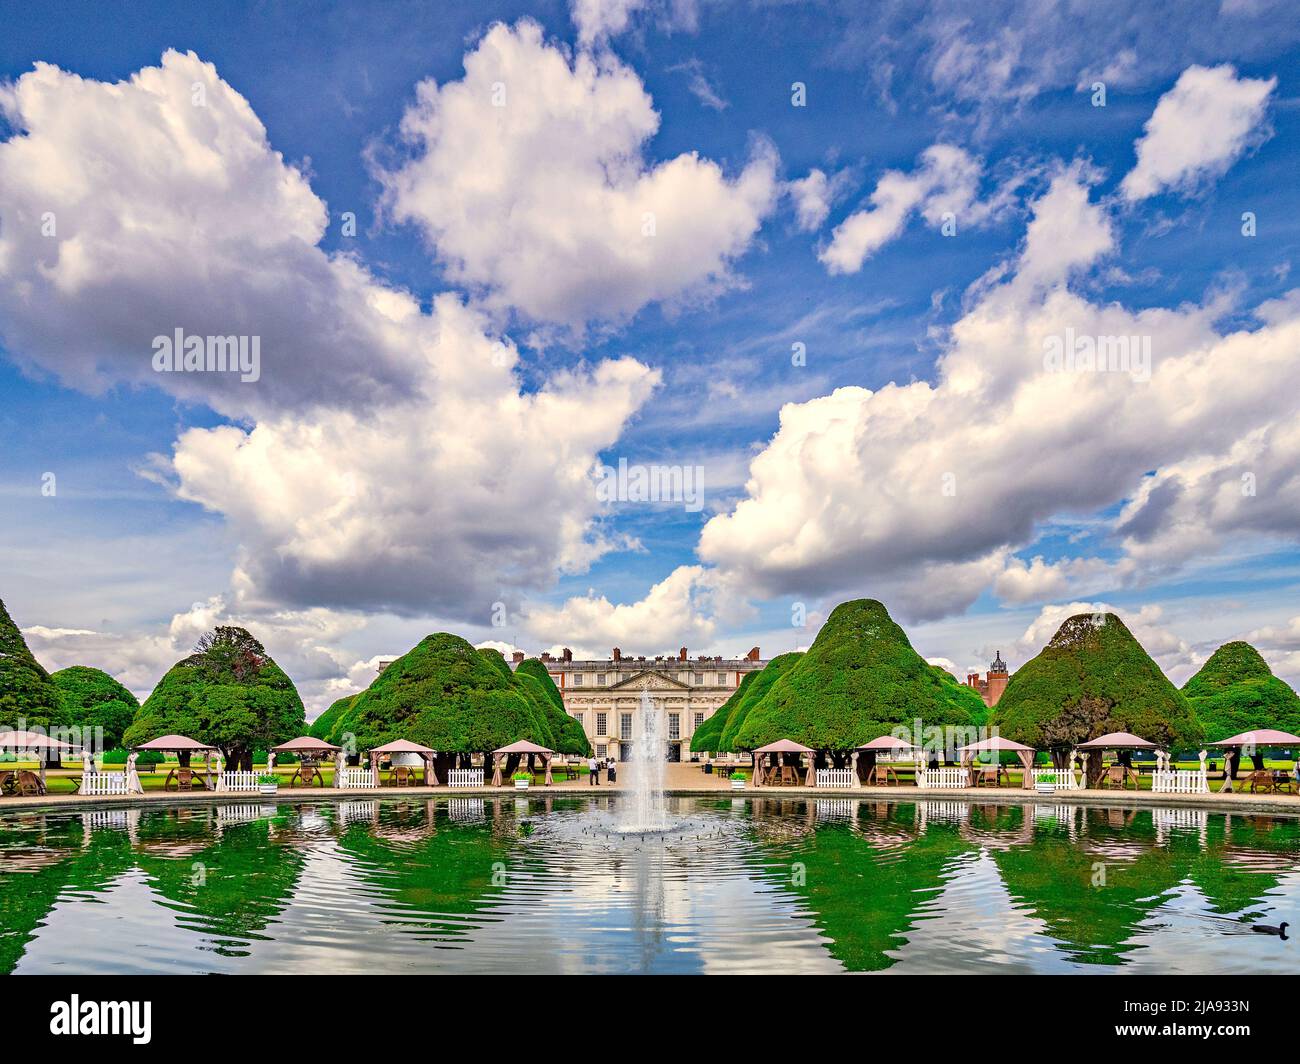 9 juin 2019: Richmond, Royaume-Uni - Hampton court Palace et l'East Garden, avec topiaire reflétée dans le lac et une petite fontaine, les visiteurs marchant autour Banque D'Images